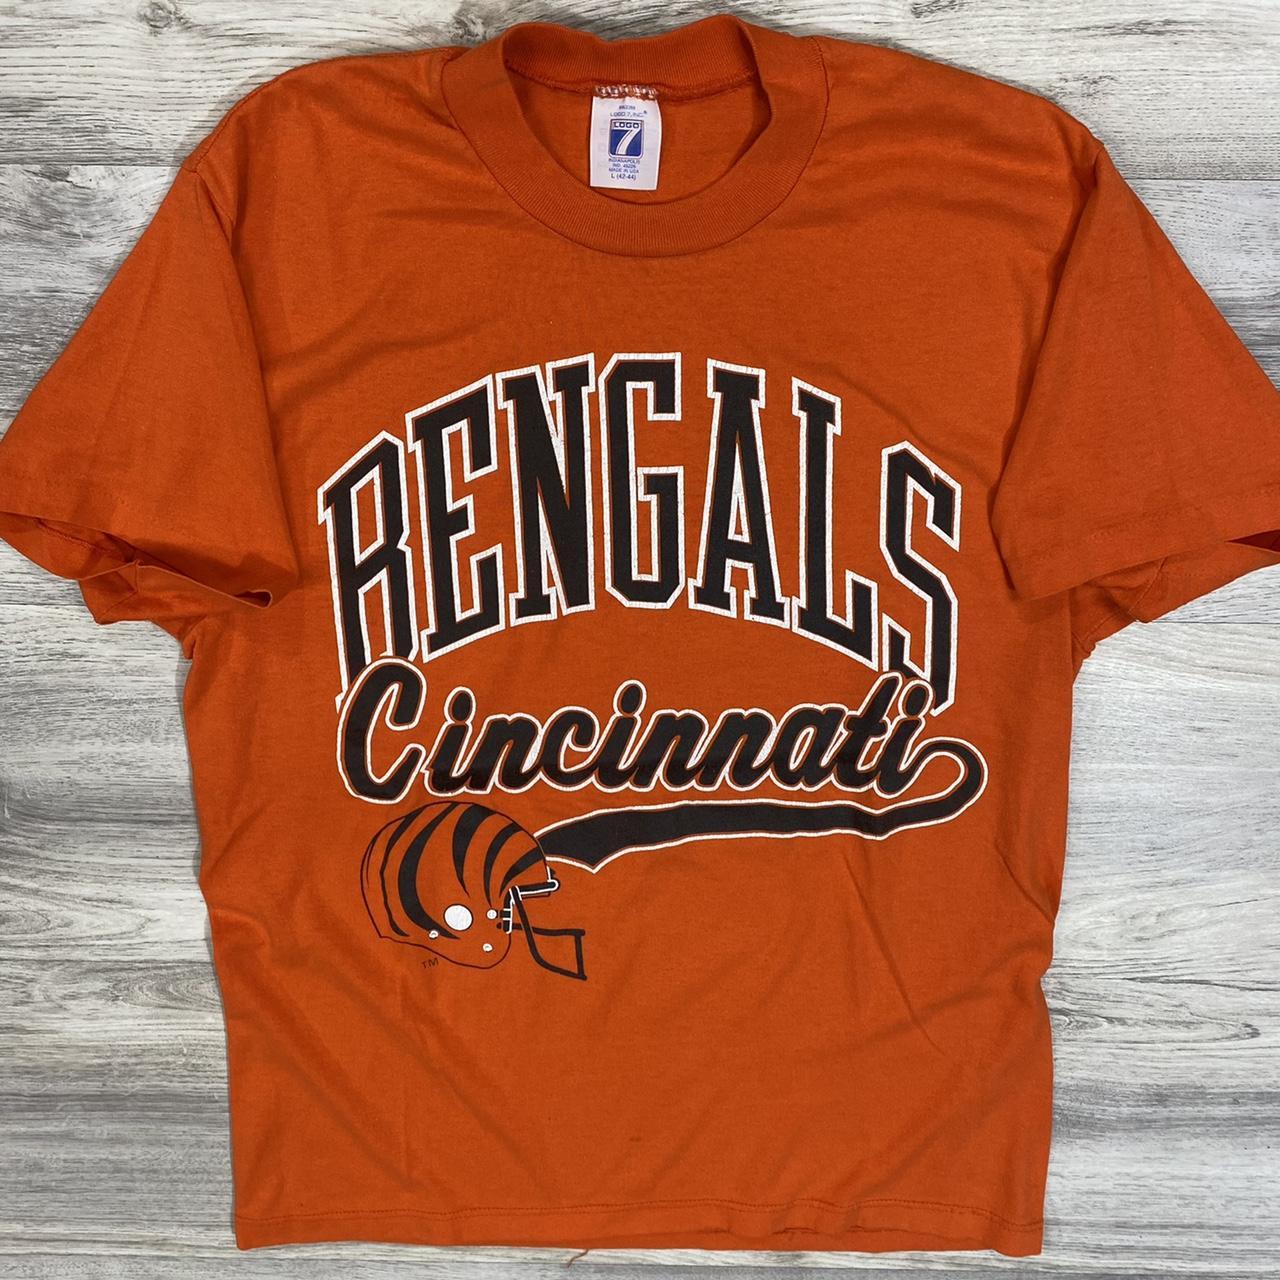 Vintage 80s 90s Cincinnati bengals t shirt ! NFL... - Depop